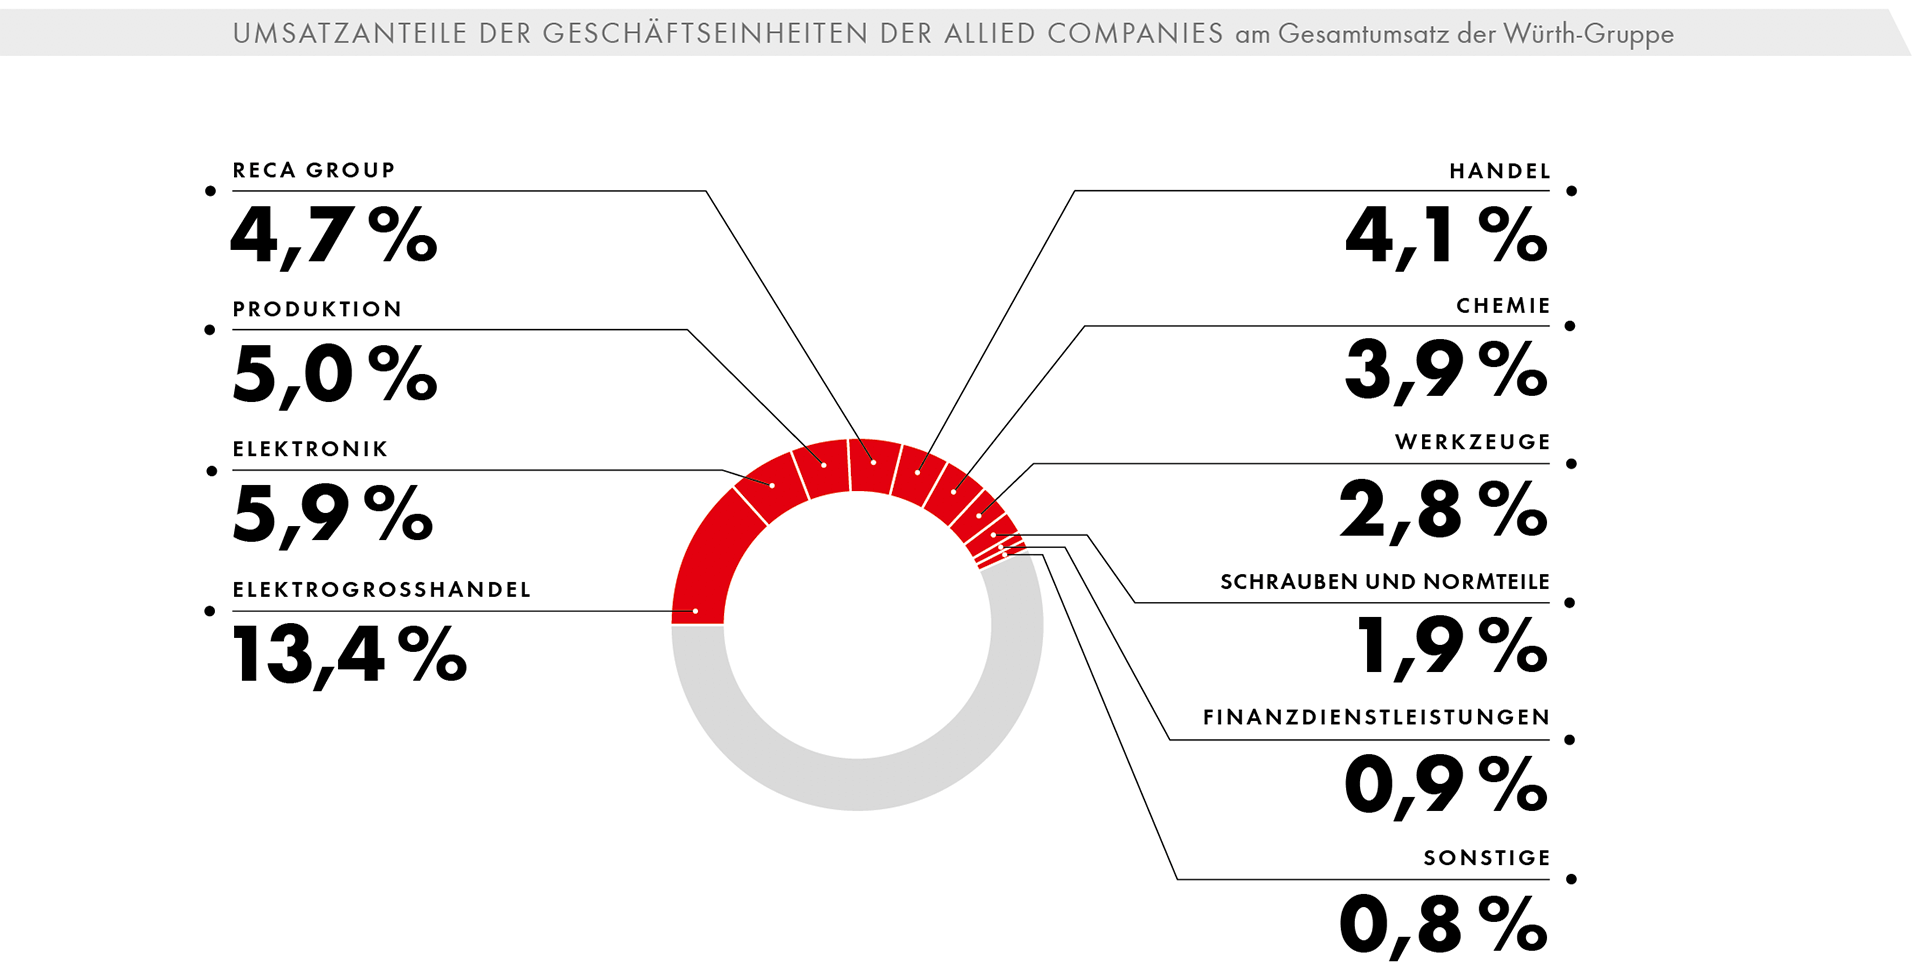 Umsatzanteile der Geschäftseinheiten der Allied companies am Gesamtumsatz der Würth-Gruppe